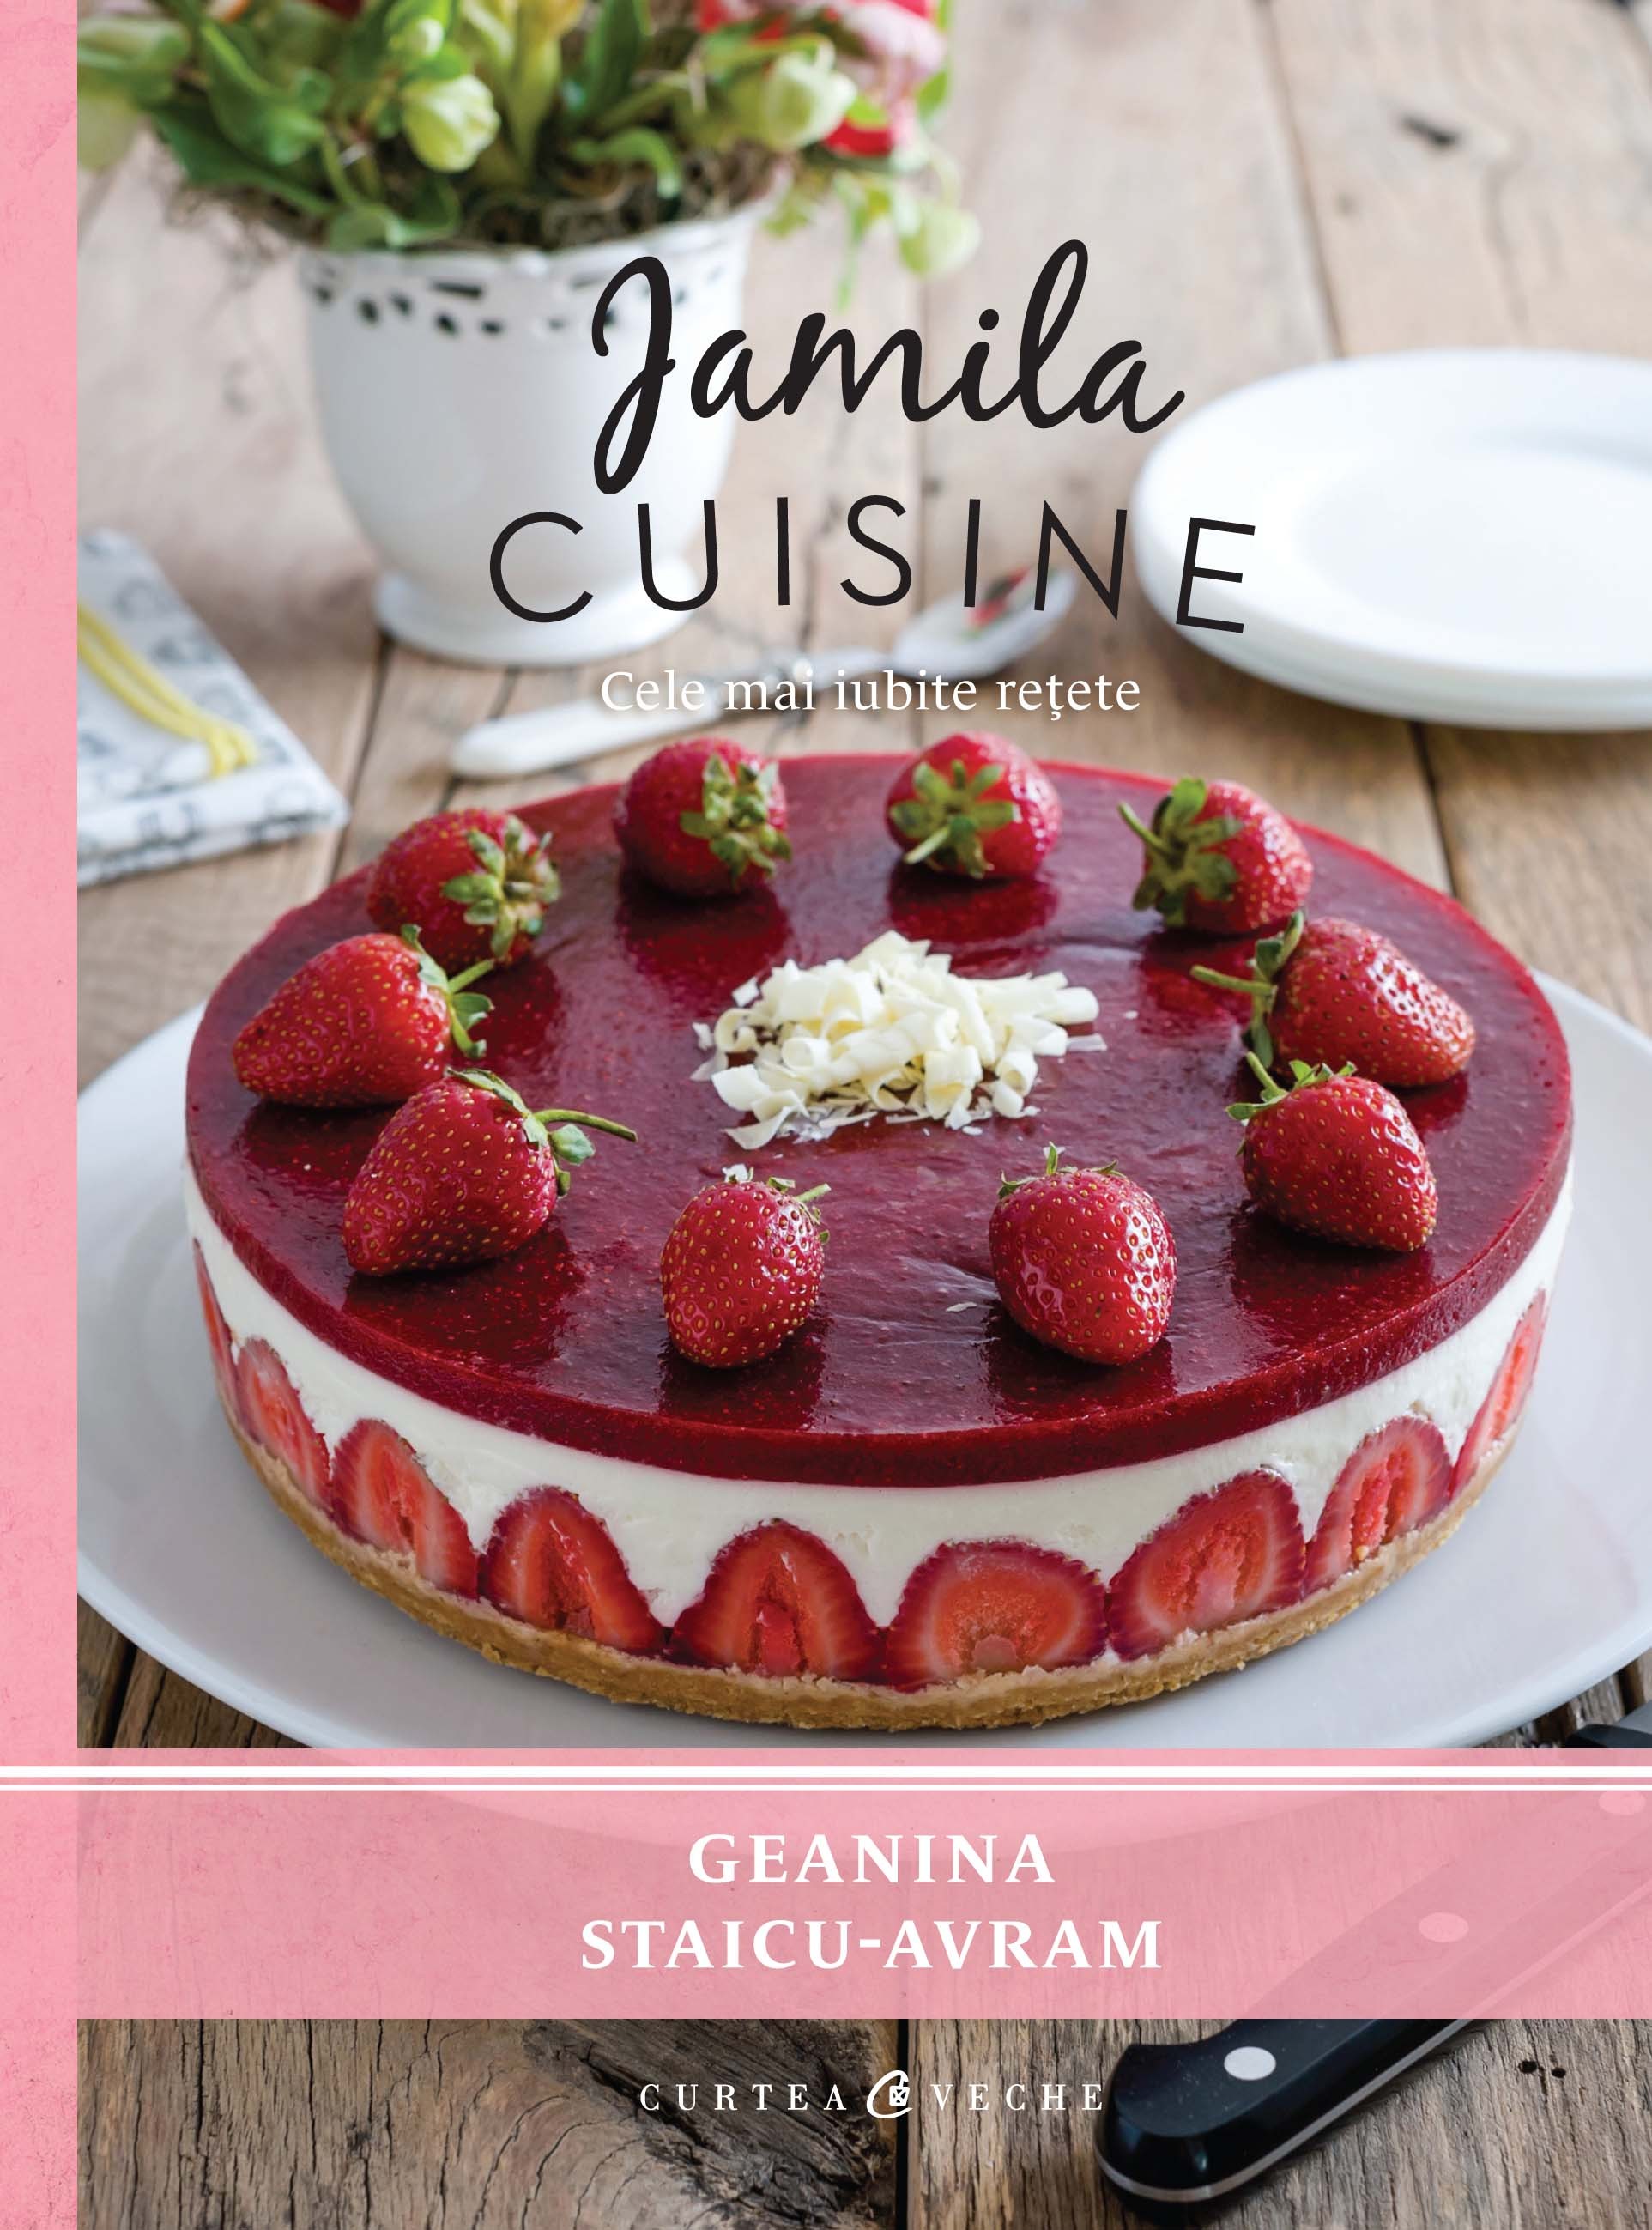 Coperta cărții: Jamila Cuisine - lonnieyoungblood.com